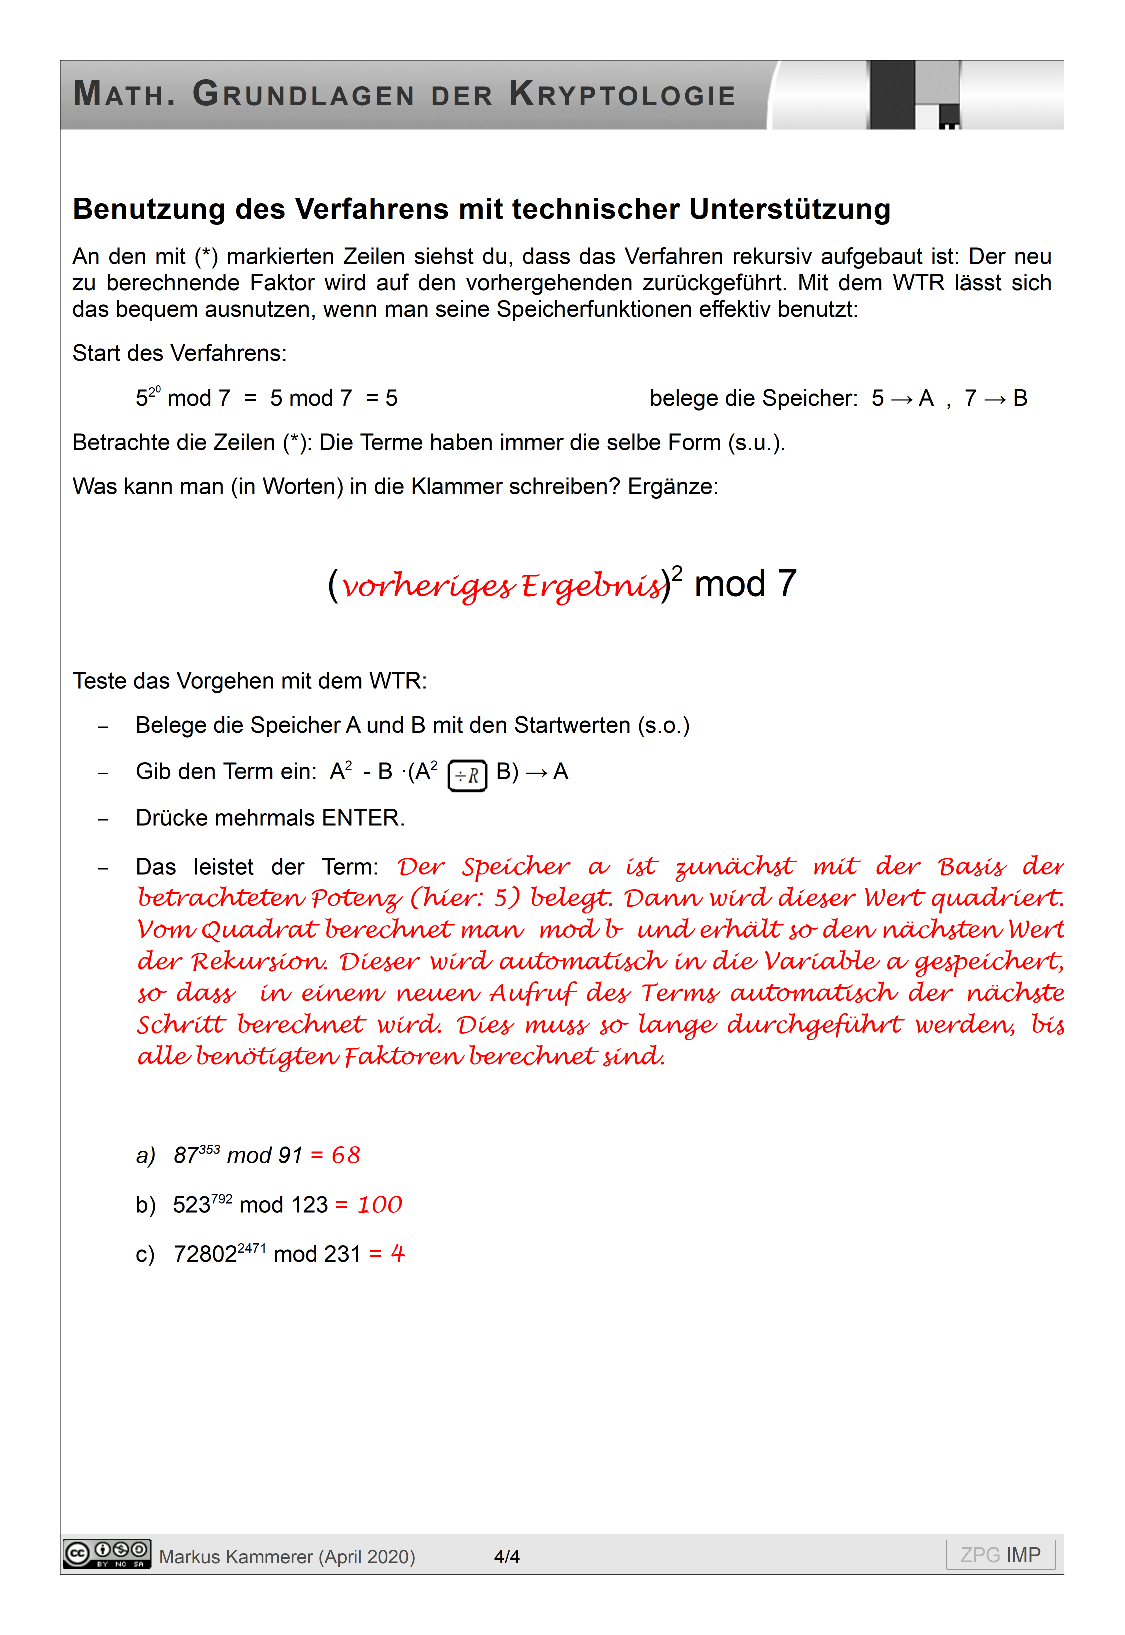 Modulares Potenzieren (Casio): Lösung, Seite 4